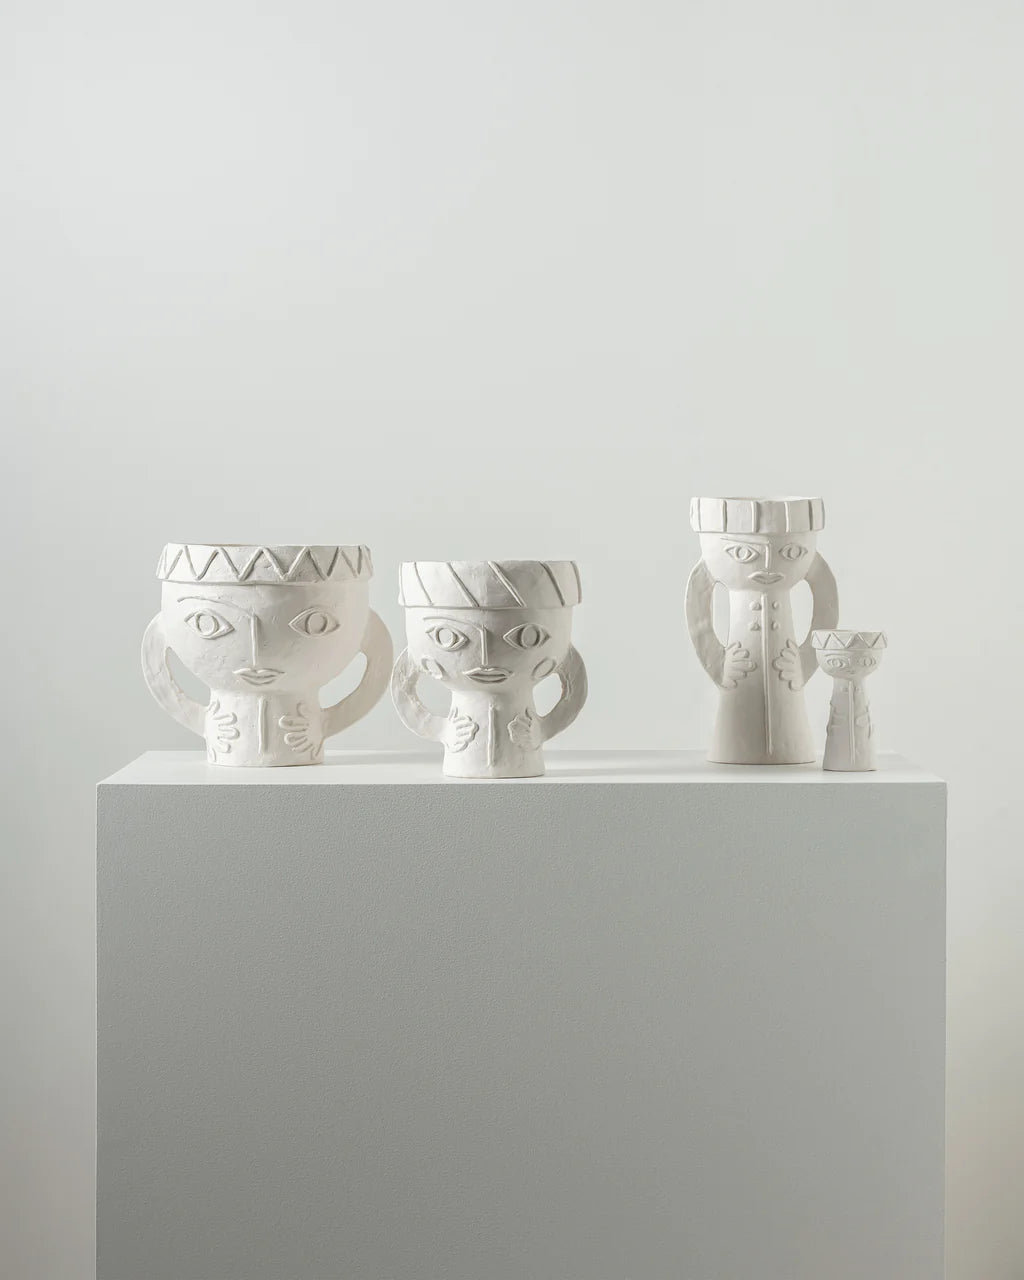 Vase " Les femmes " by  Marie Michielssen